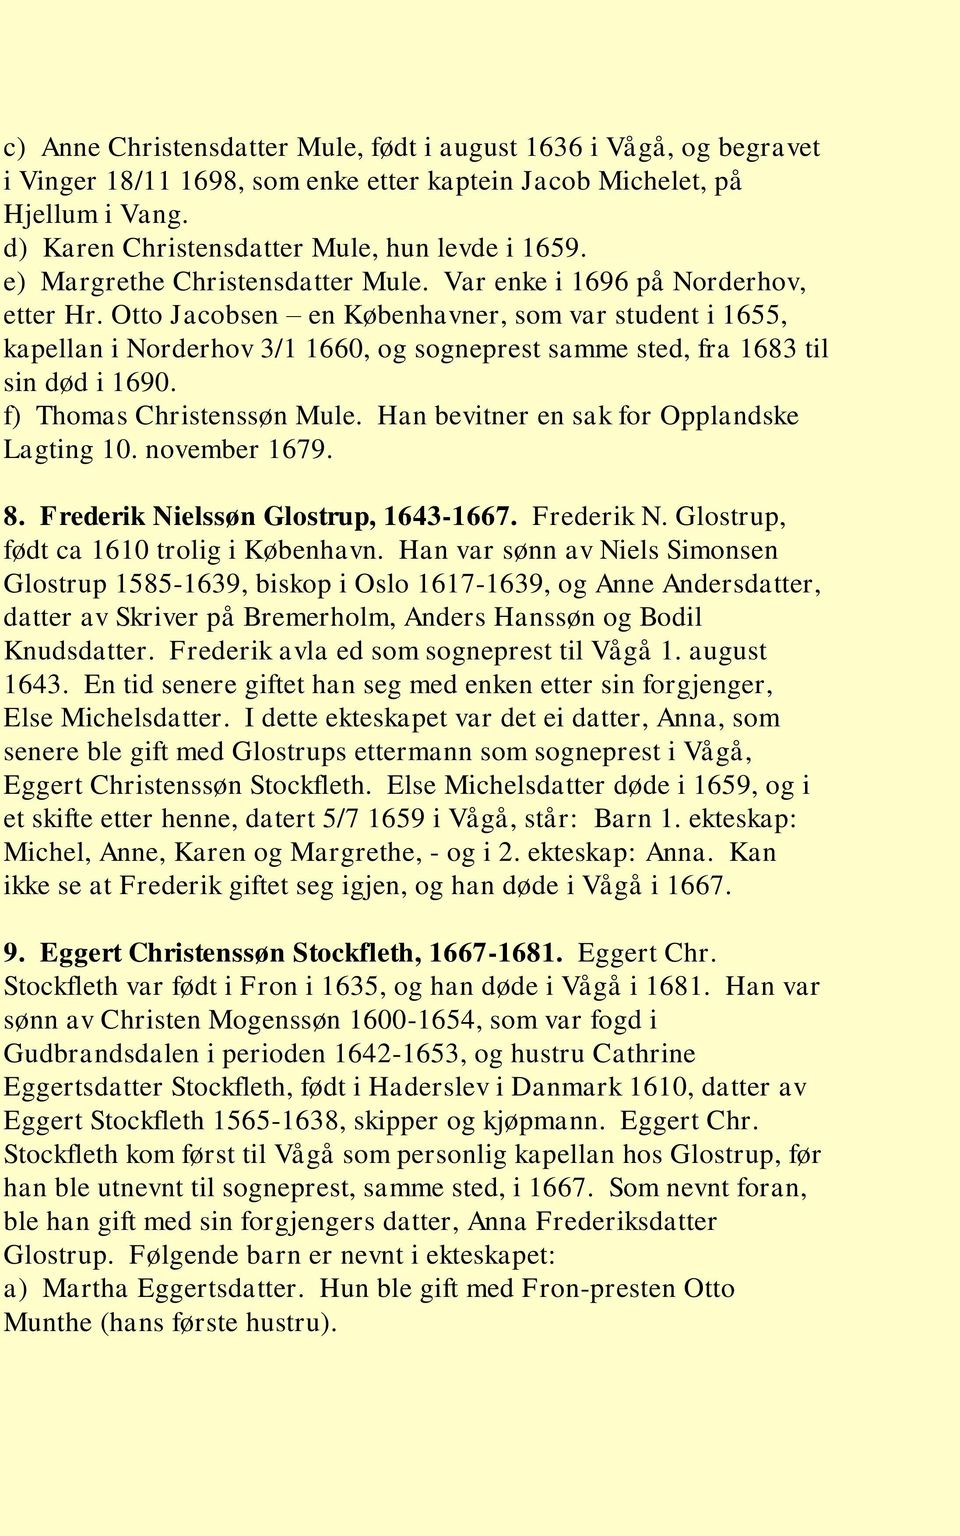 Otto Jacobsen en Københavner, som var student i 1655, kapellan i Norderhov 3/1 1660, og sogneprest samme sted, fra 1683 til sin død i 1690. f) Thomas Christenssøn Mule.